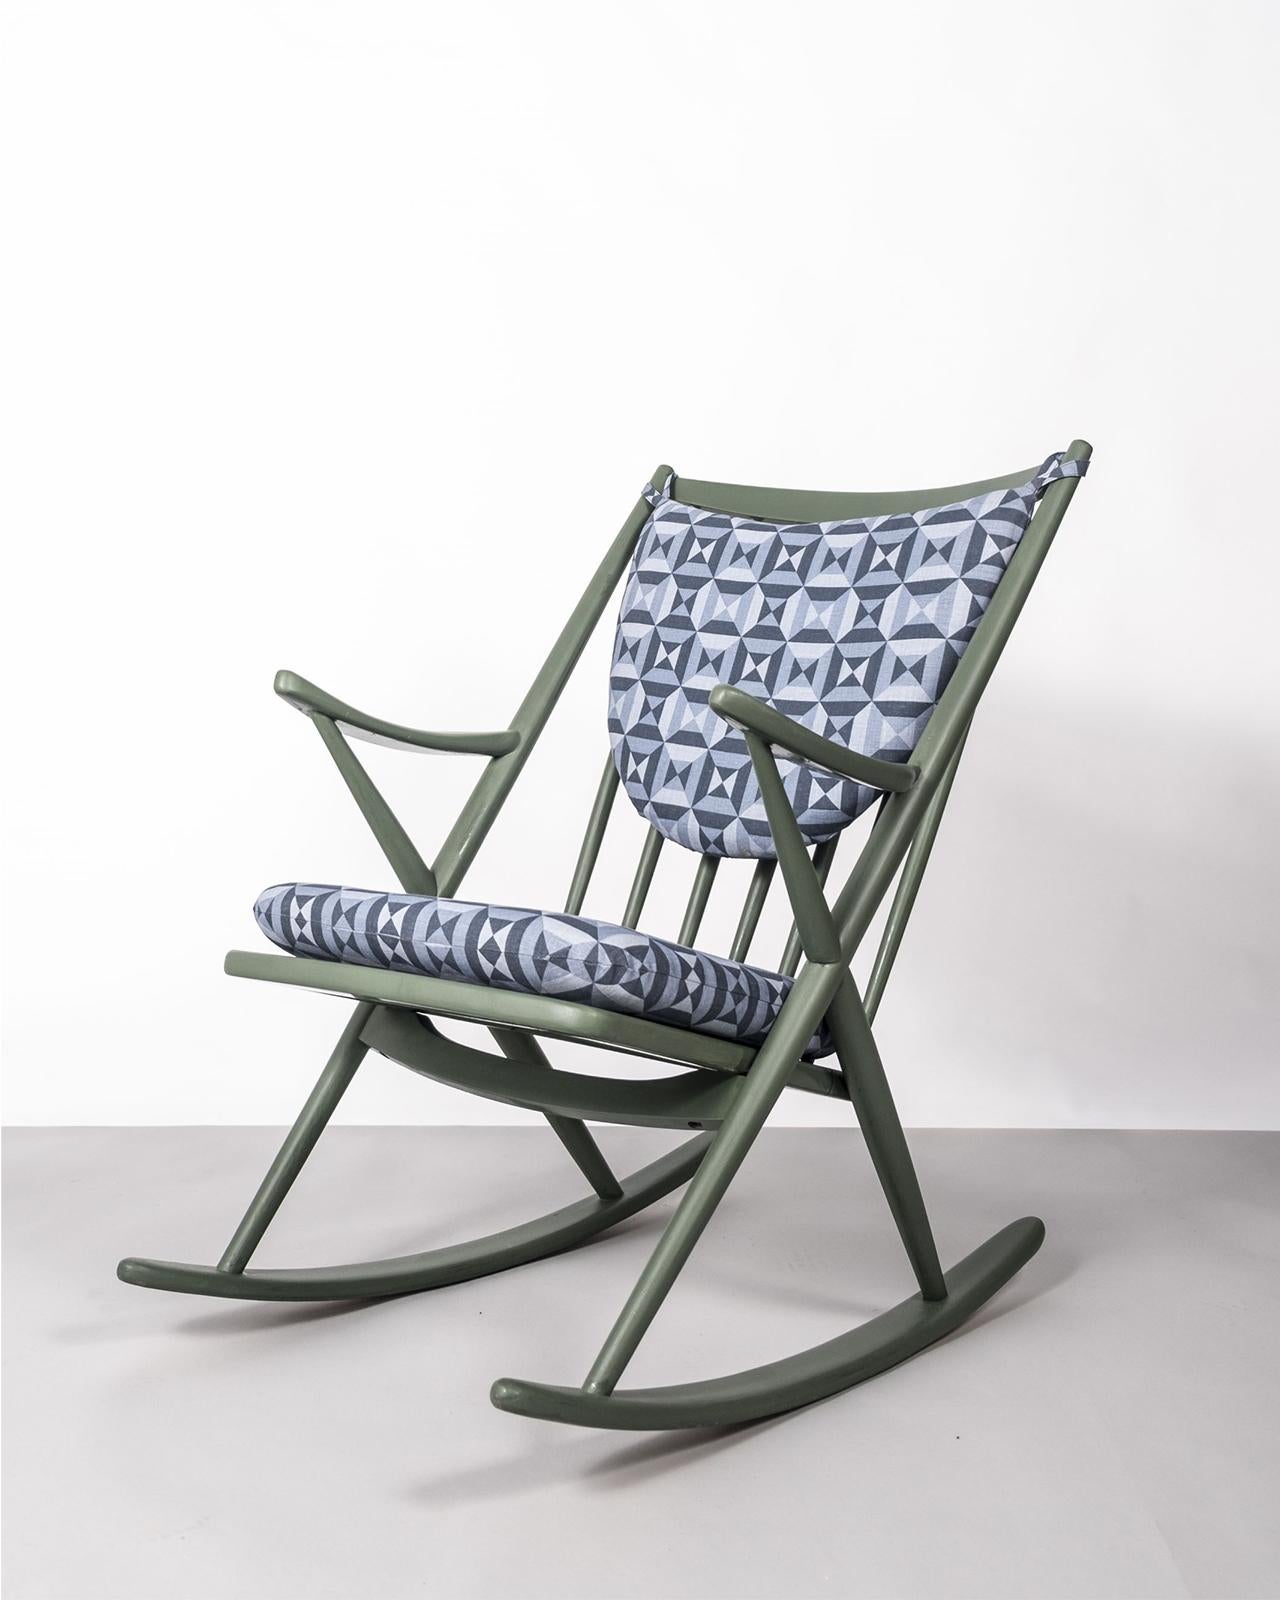 Chaise à bascule danoise du milieu du siècle par Frank Reenskaug, pour Bramin Møbler, conçue en 1958.

La chaise est présentée en teck peint avec un coussin d'assise et de dossier détaché, nouvellement tapissé en lin imprimé par Vanderhurd (Londres).